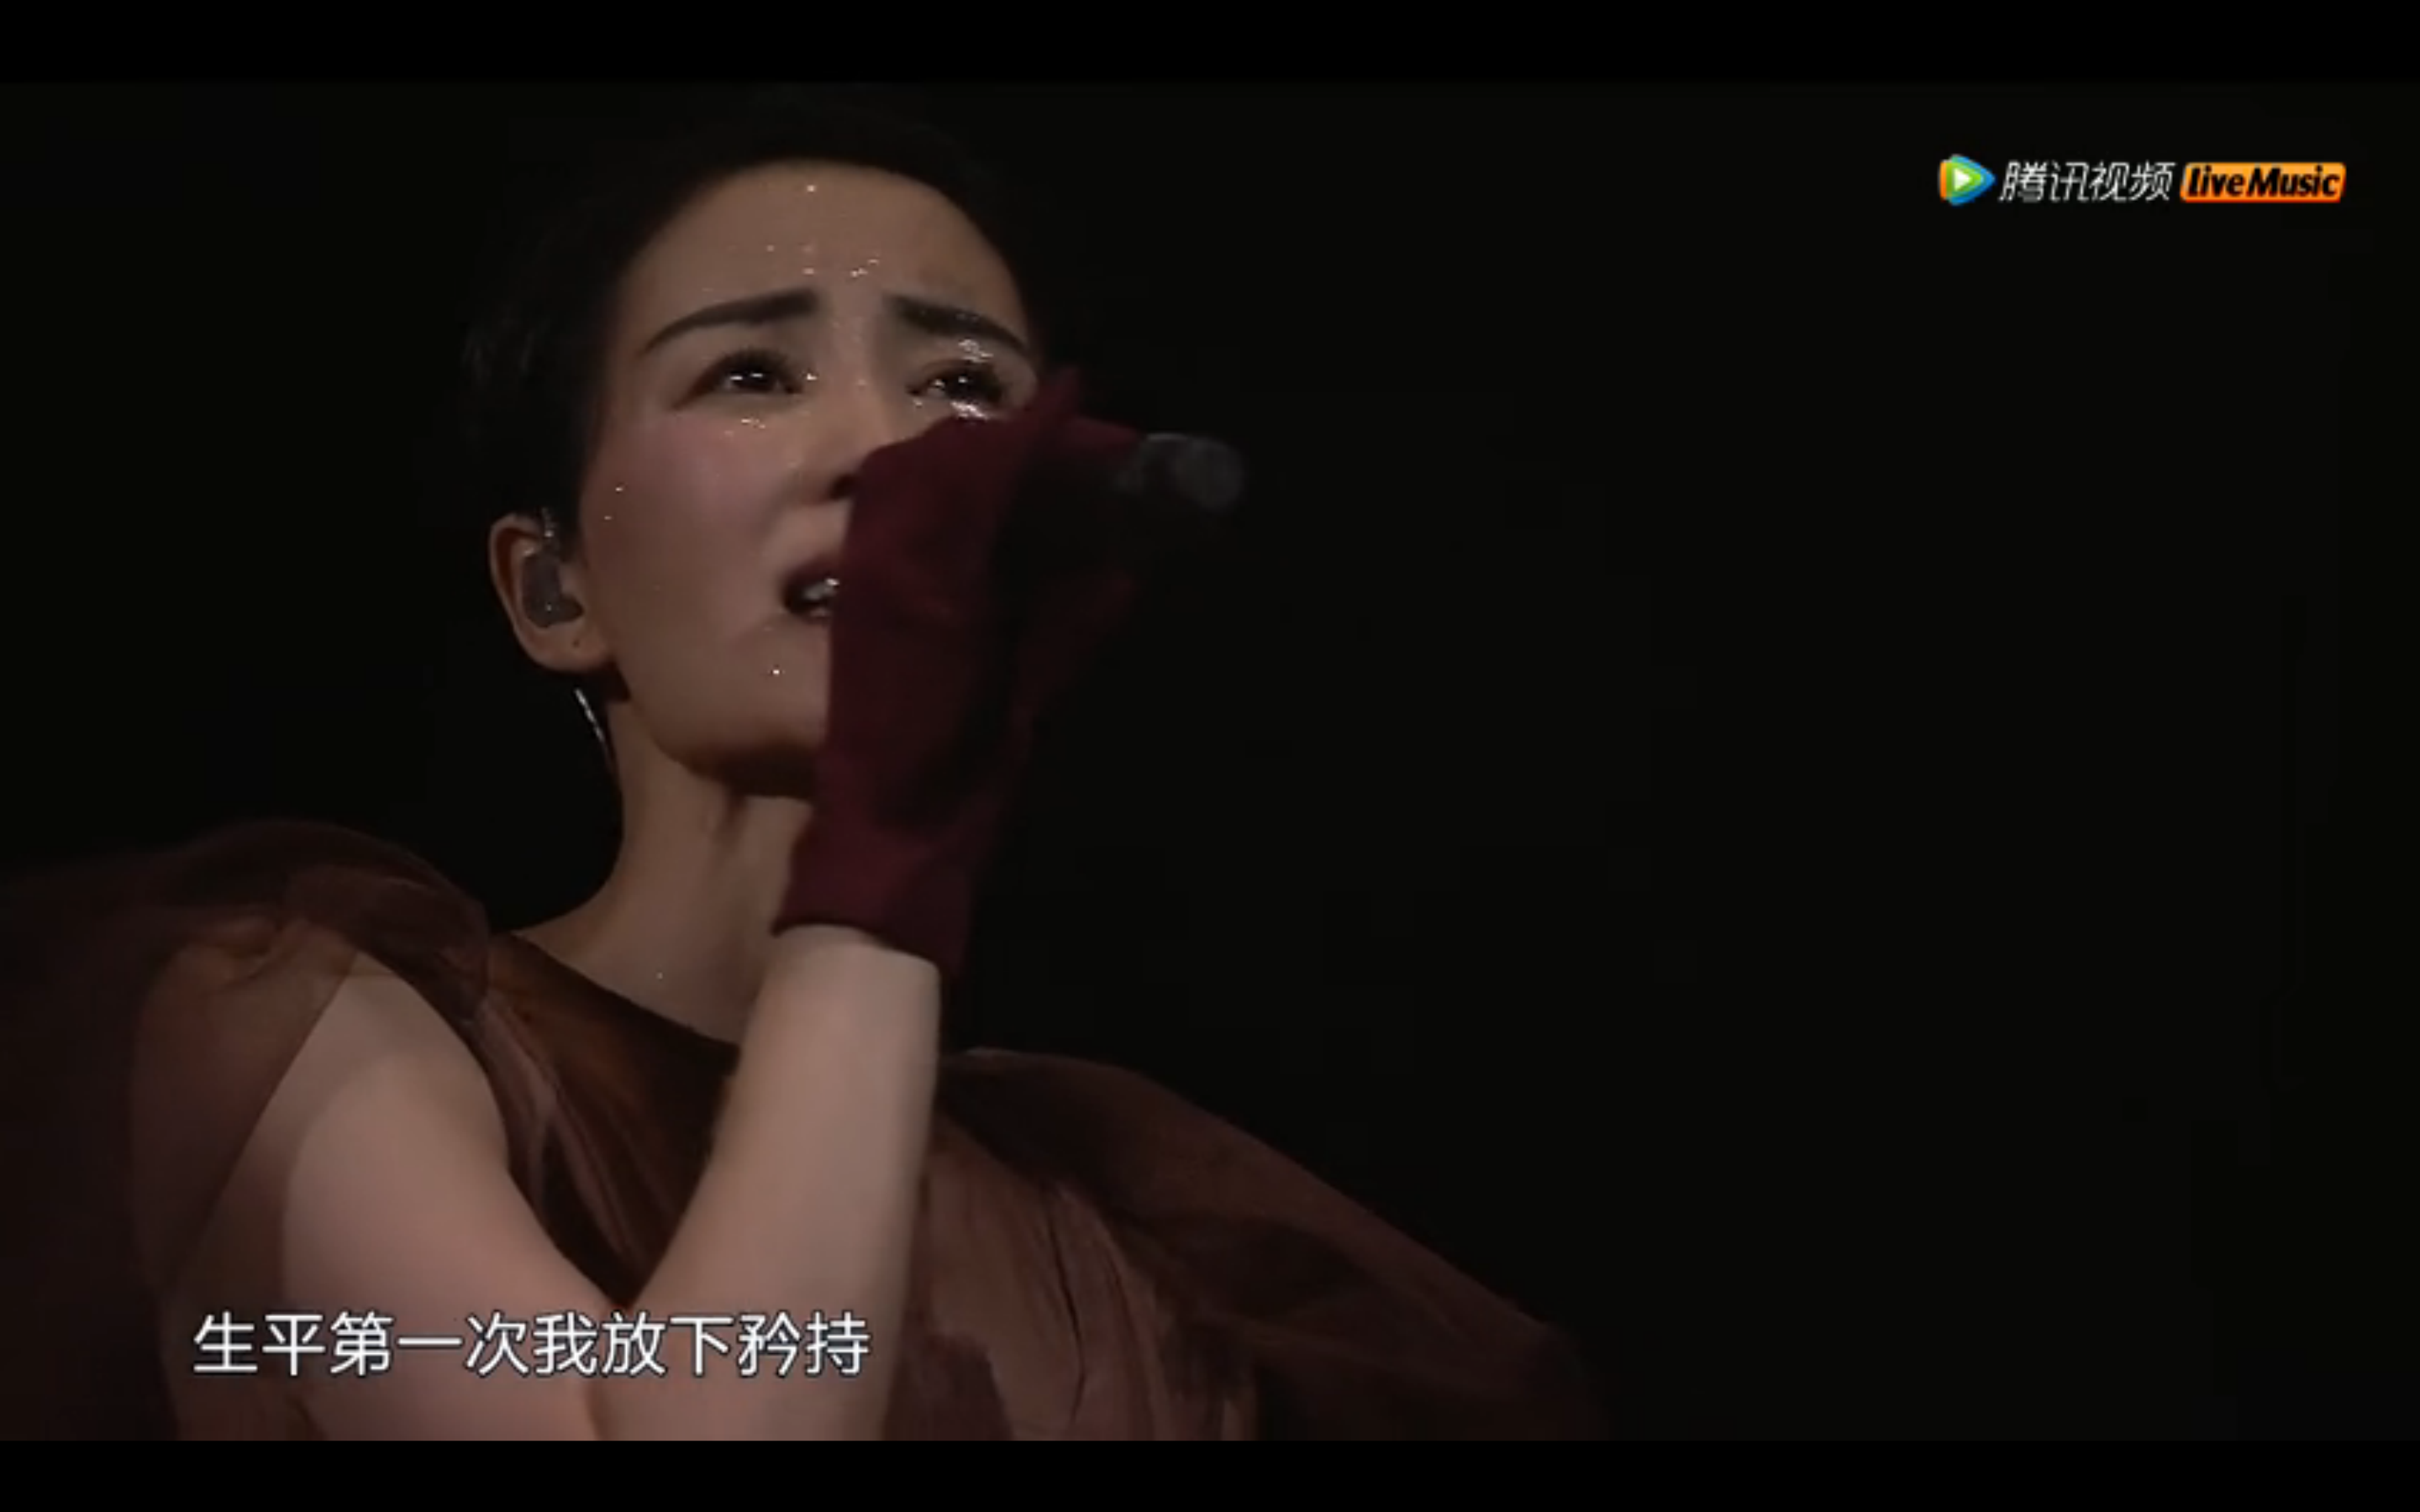 如何评价 2016 王菲「幻乐一场」演唱会?